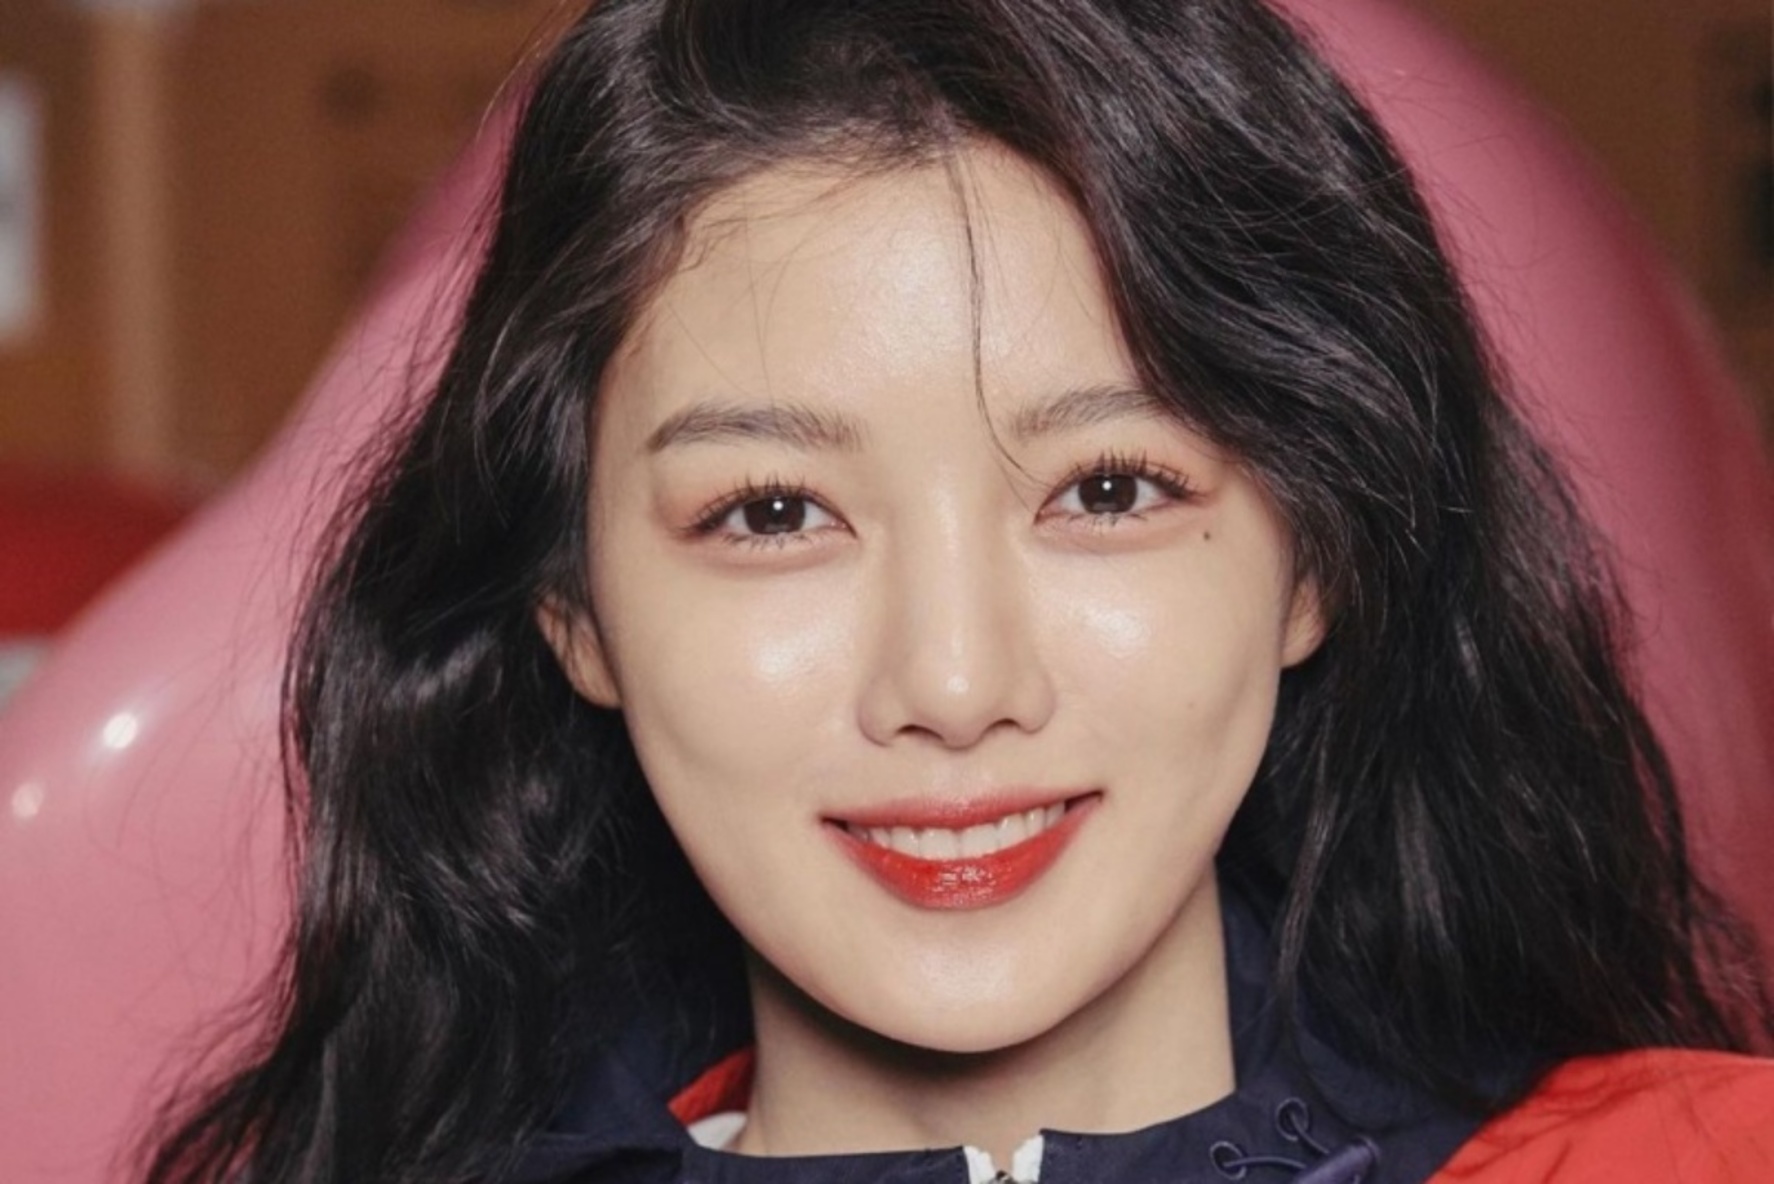 韓国若手女優の筆頭 キム ユジョンのキュートな笑顔にノックアウト Forza Style ファッション ライフスタイル フォルツァスタイル